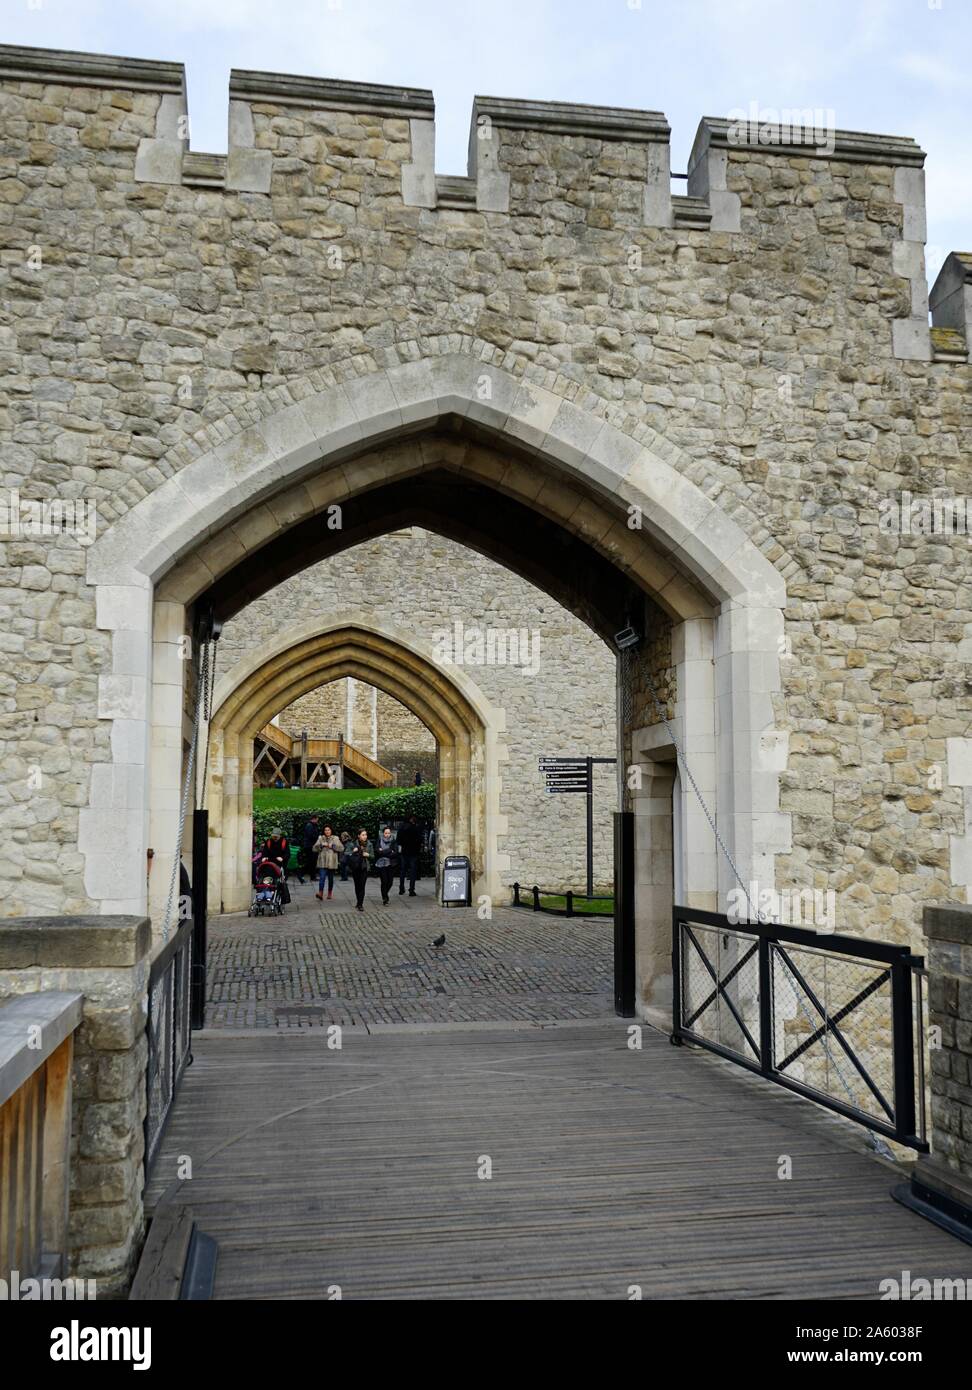 Vues autour de la Tour de Londres, un château historique situé sur la rive nord de la Tamise dans le centre de Londres. A terminé au 14e siècle. Du 12e siècle jusqu'au 20ème siècle le château fut utilisé comme prison. Datée 2015 Banque D'Images